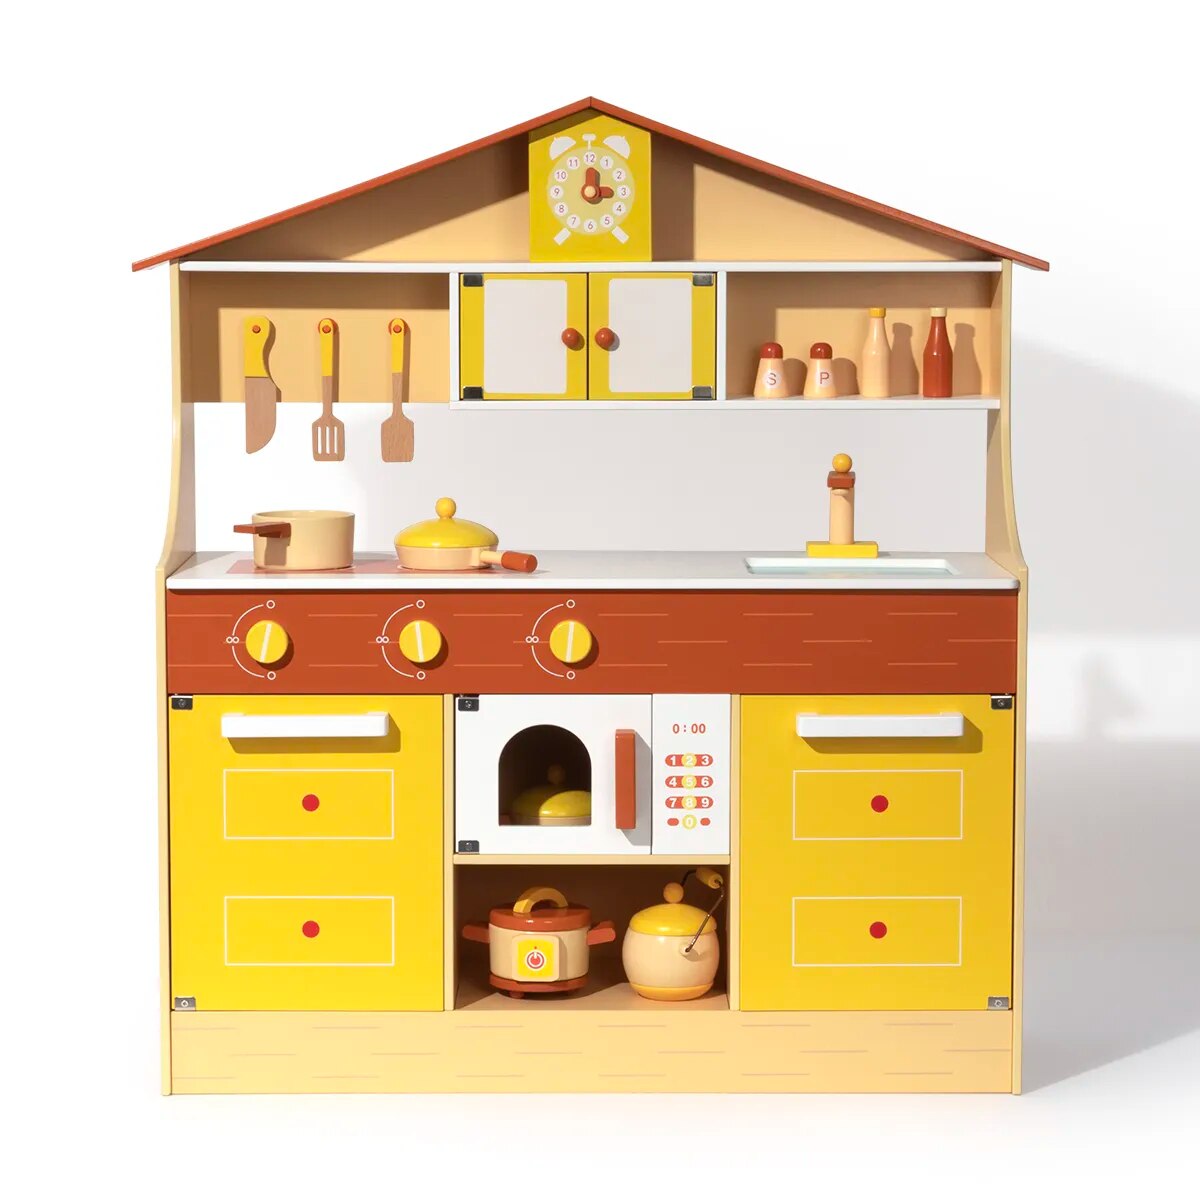 Spielküchenset aus Holz für Kinder und Kleinkinder, Rollenspiele – preisgünstig